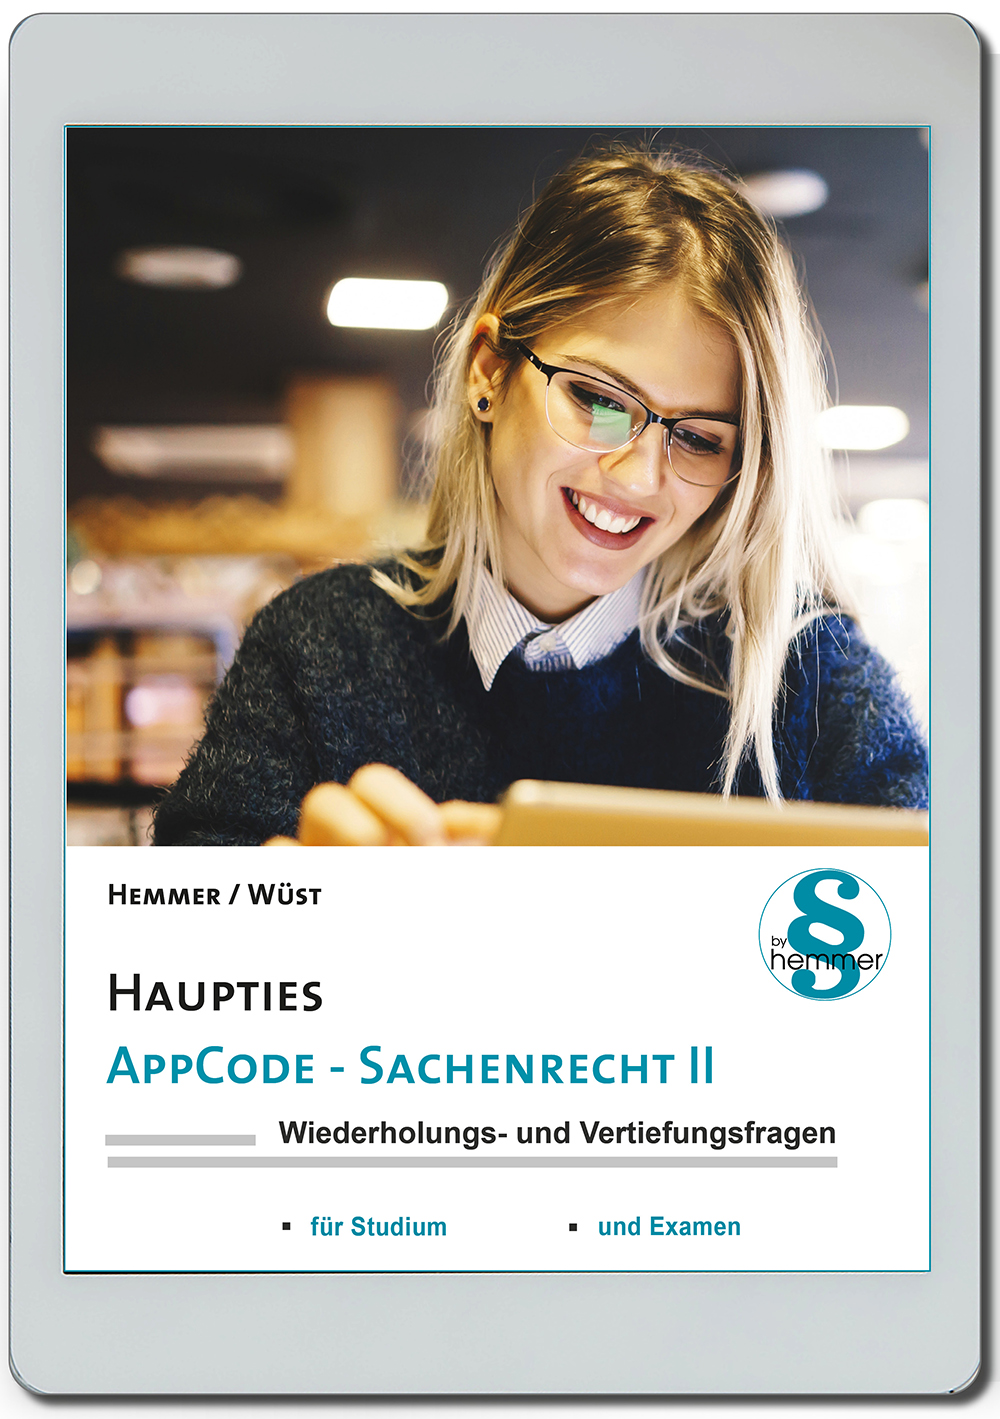 AppCode - haupties - Sachenrecht II